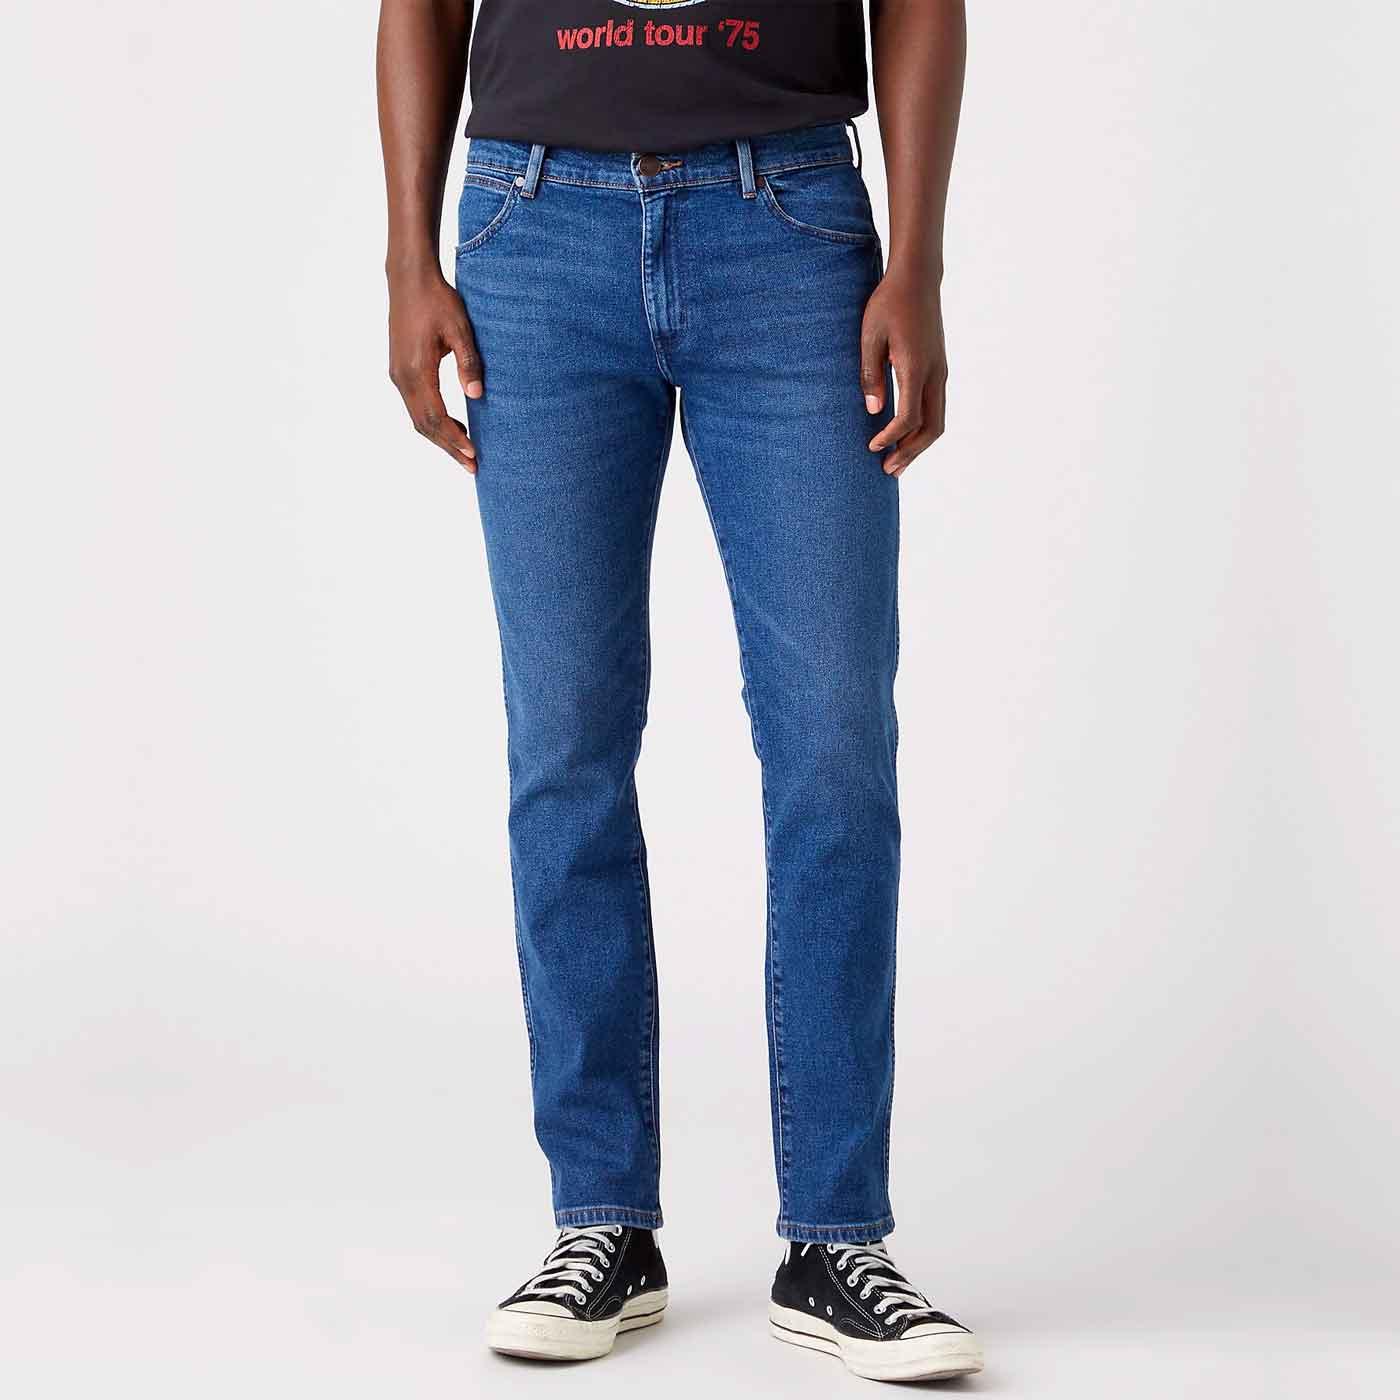 Larston WRANGLER 812 Slim Taper Jeans in Country Boy